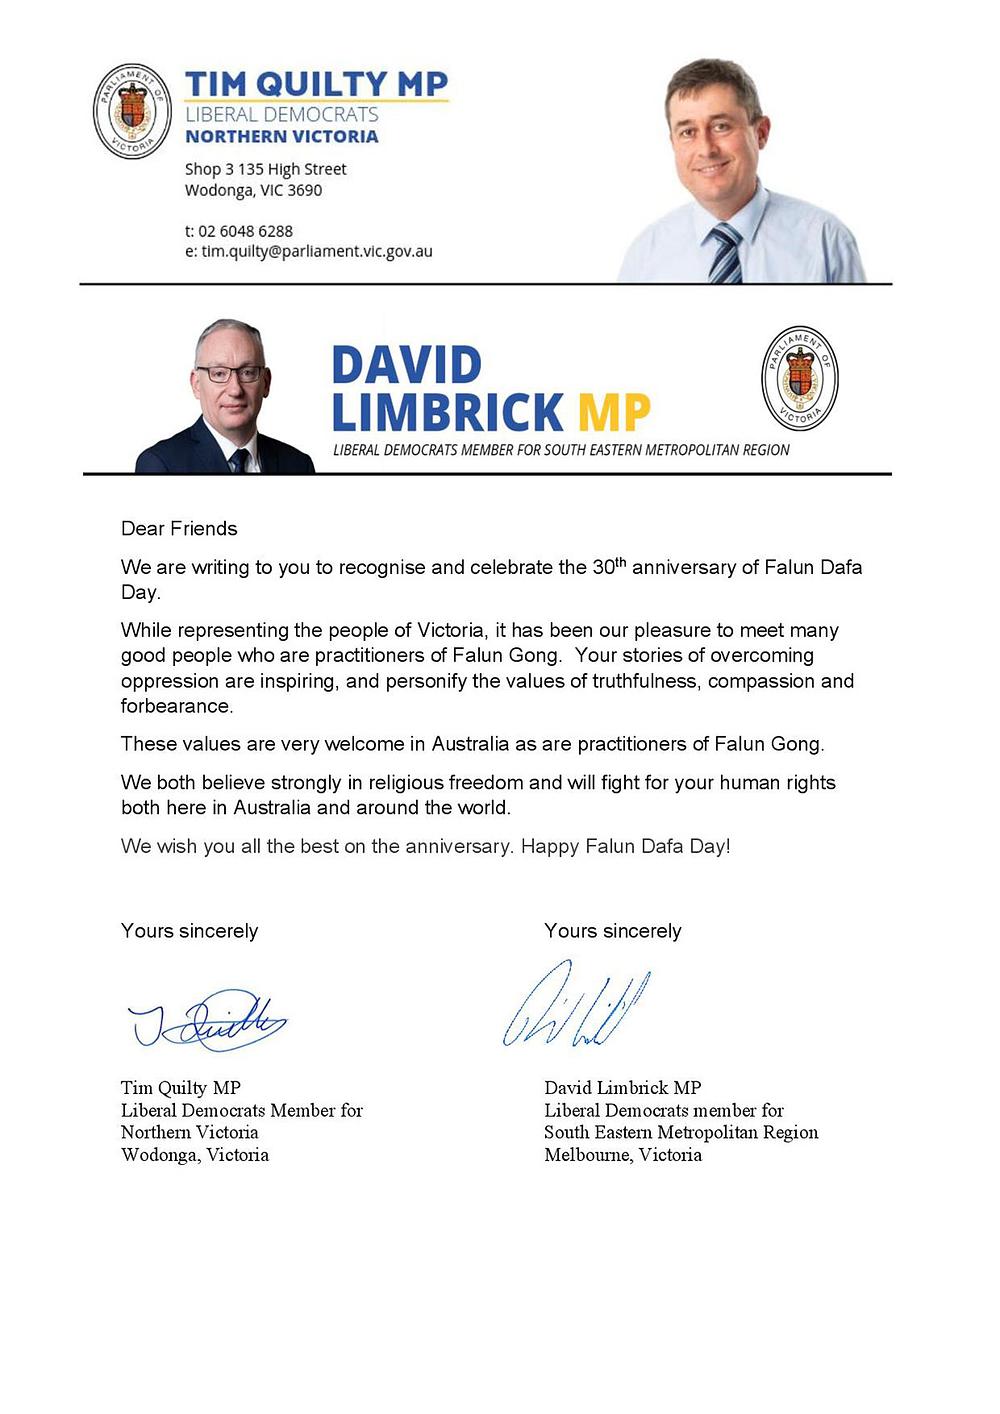 Čestitka koju su zajednički napisali članovi Australskog parlamenta Tim Quilty i David Limbrick.
 